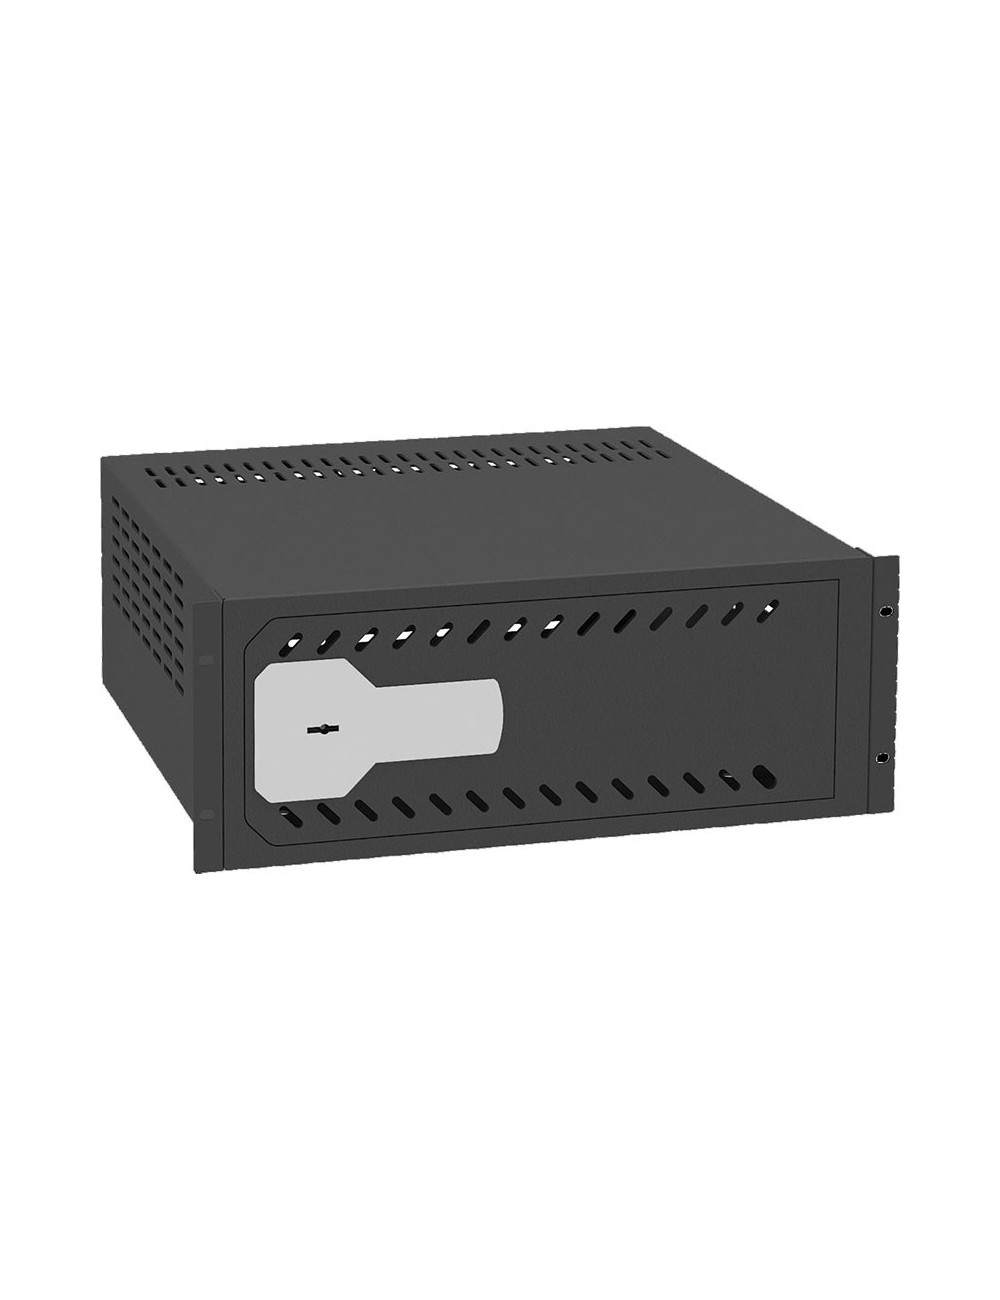 Cassaforte per DVR da 1U rack - Rack 19" - Specifico per CCTV - serratura meccanica di sicurezza